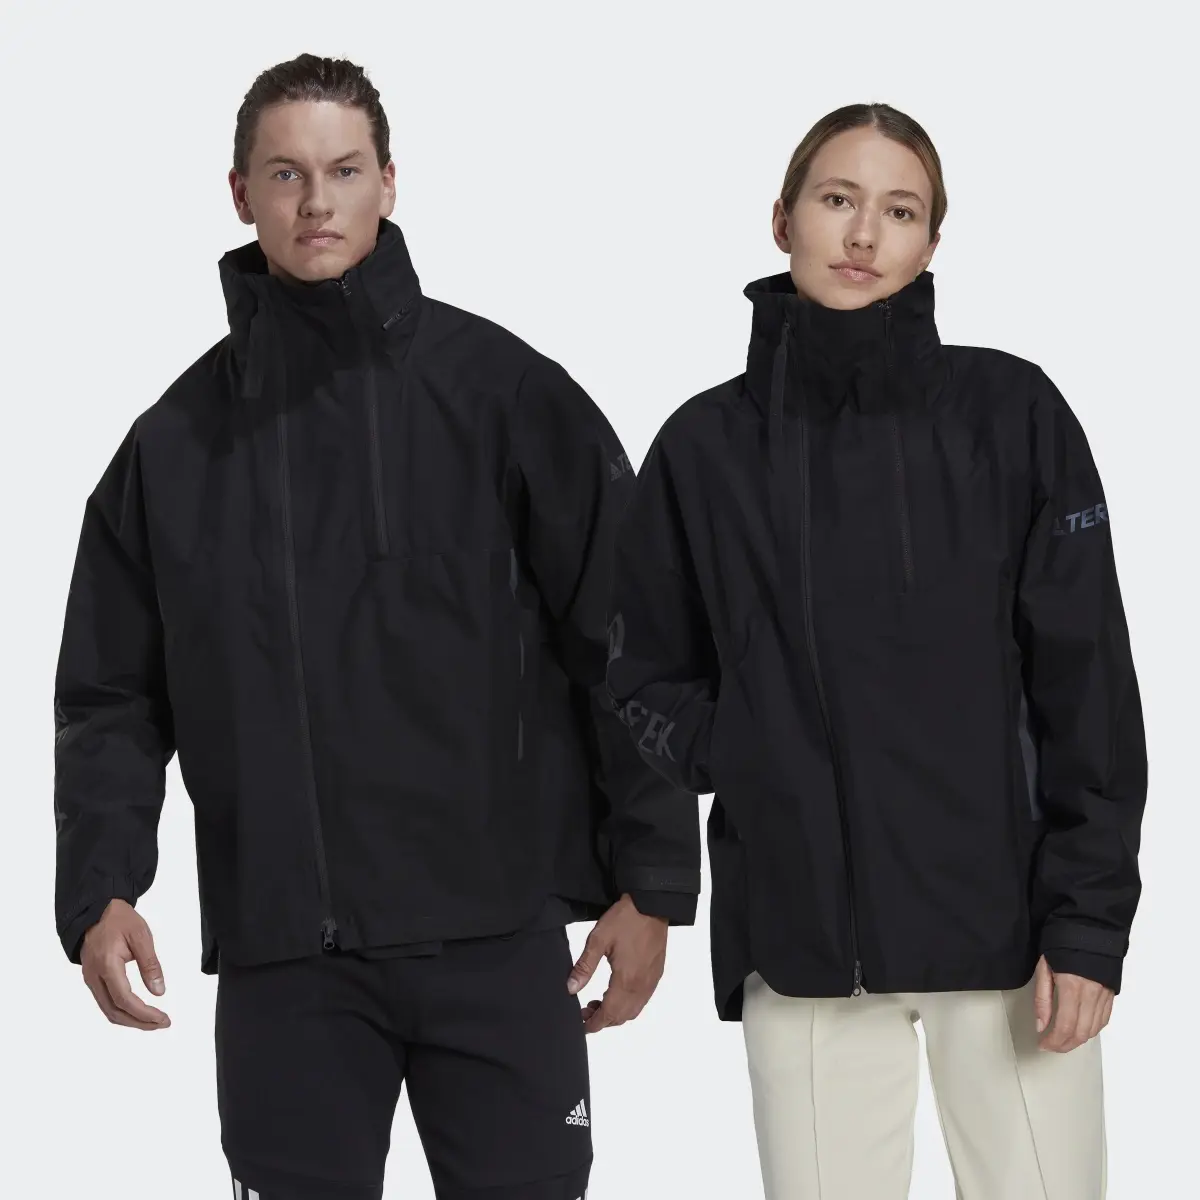 Adidas TERREX CT MYSHELTER GORE-TEX Jacket (Gender Neutral). 1